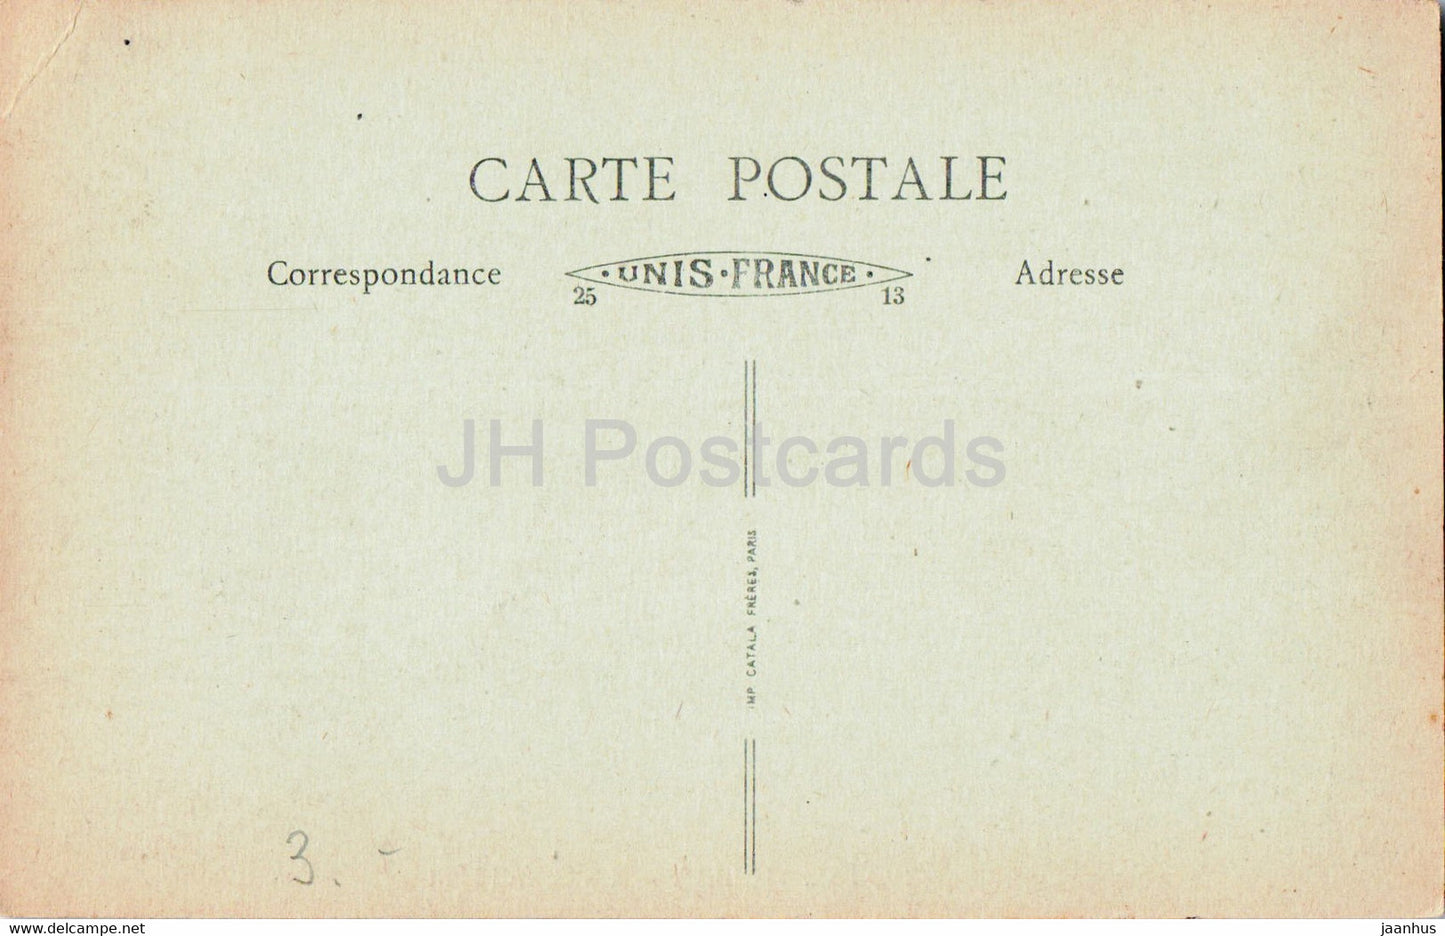 Cannes - Hotel Gallia - Le Grand Hall - old postcard - France - unused